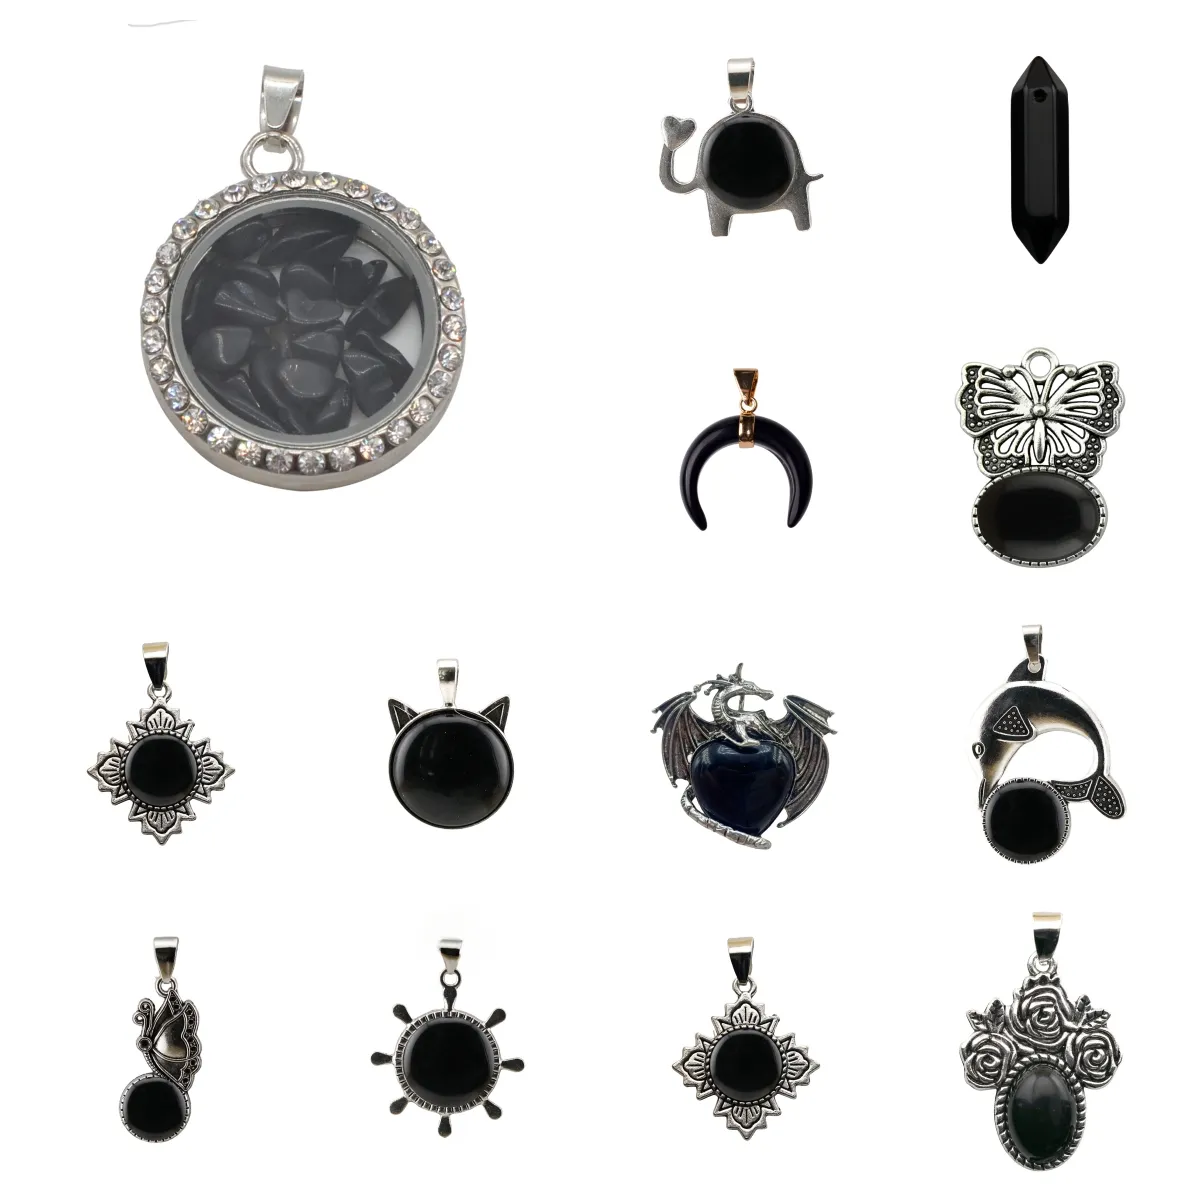 Pingente de pedra preciosa ônix preto luxuoso, material de alta qualidade para fazer joias, pingente de pedras preciosas boutique, oferta imperdível